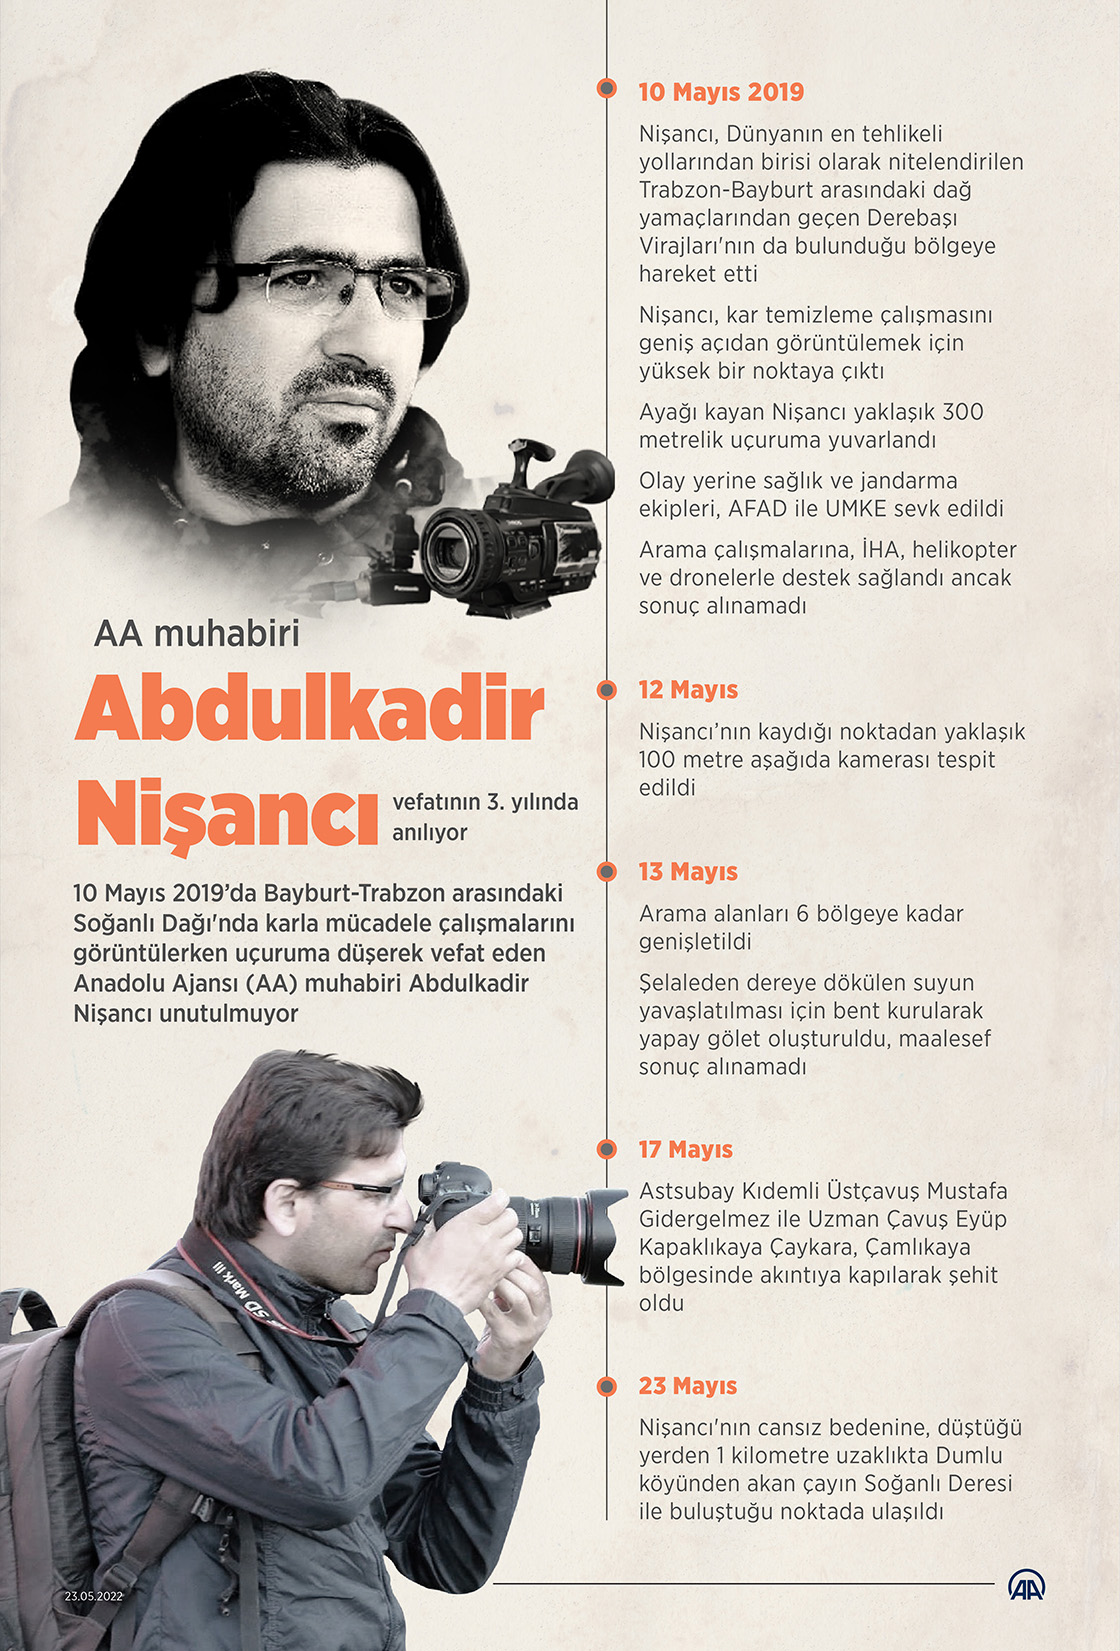 AA muhabiri Abdulkadir Nişancı vefatının 3. yılında anılıyor